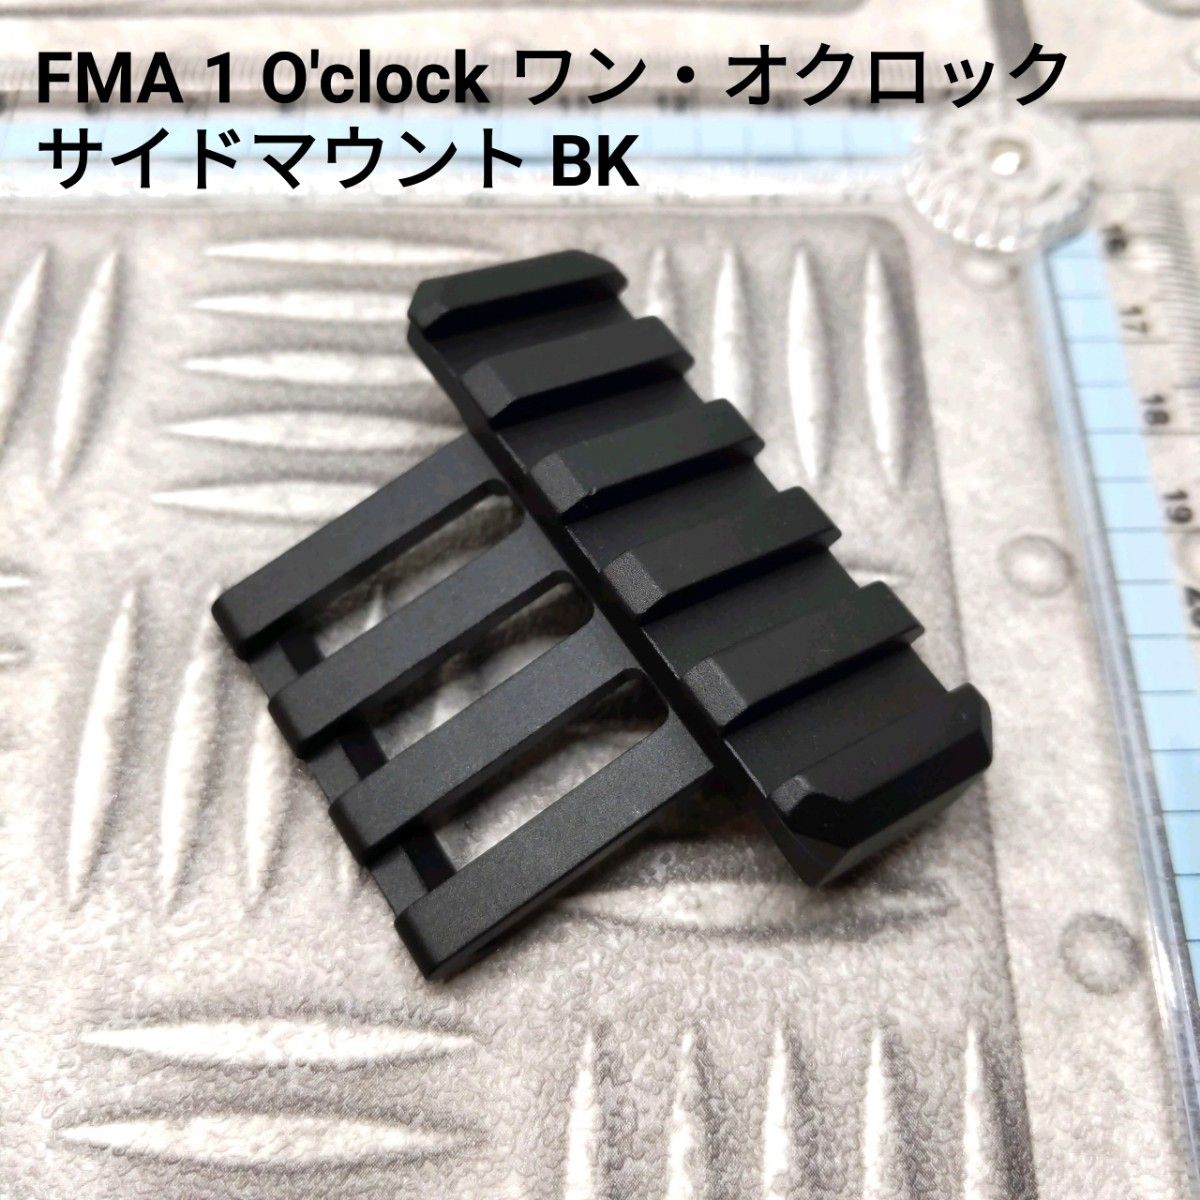 FMA 1 O'clock ワン・オクロック サイドマウント BK